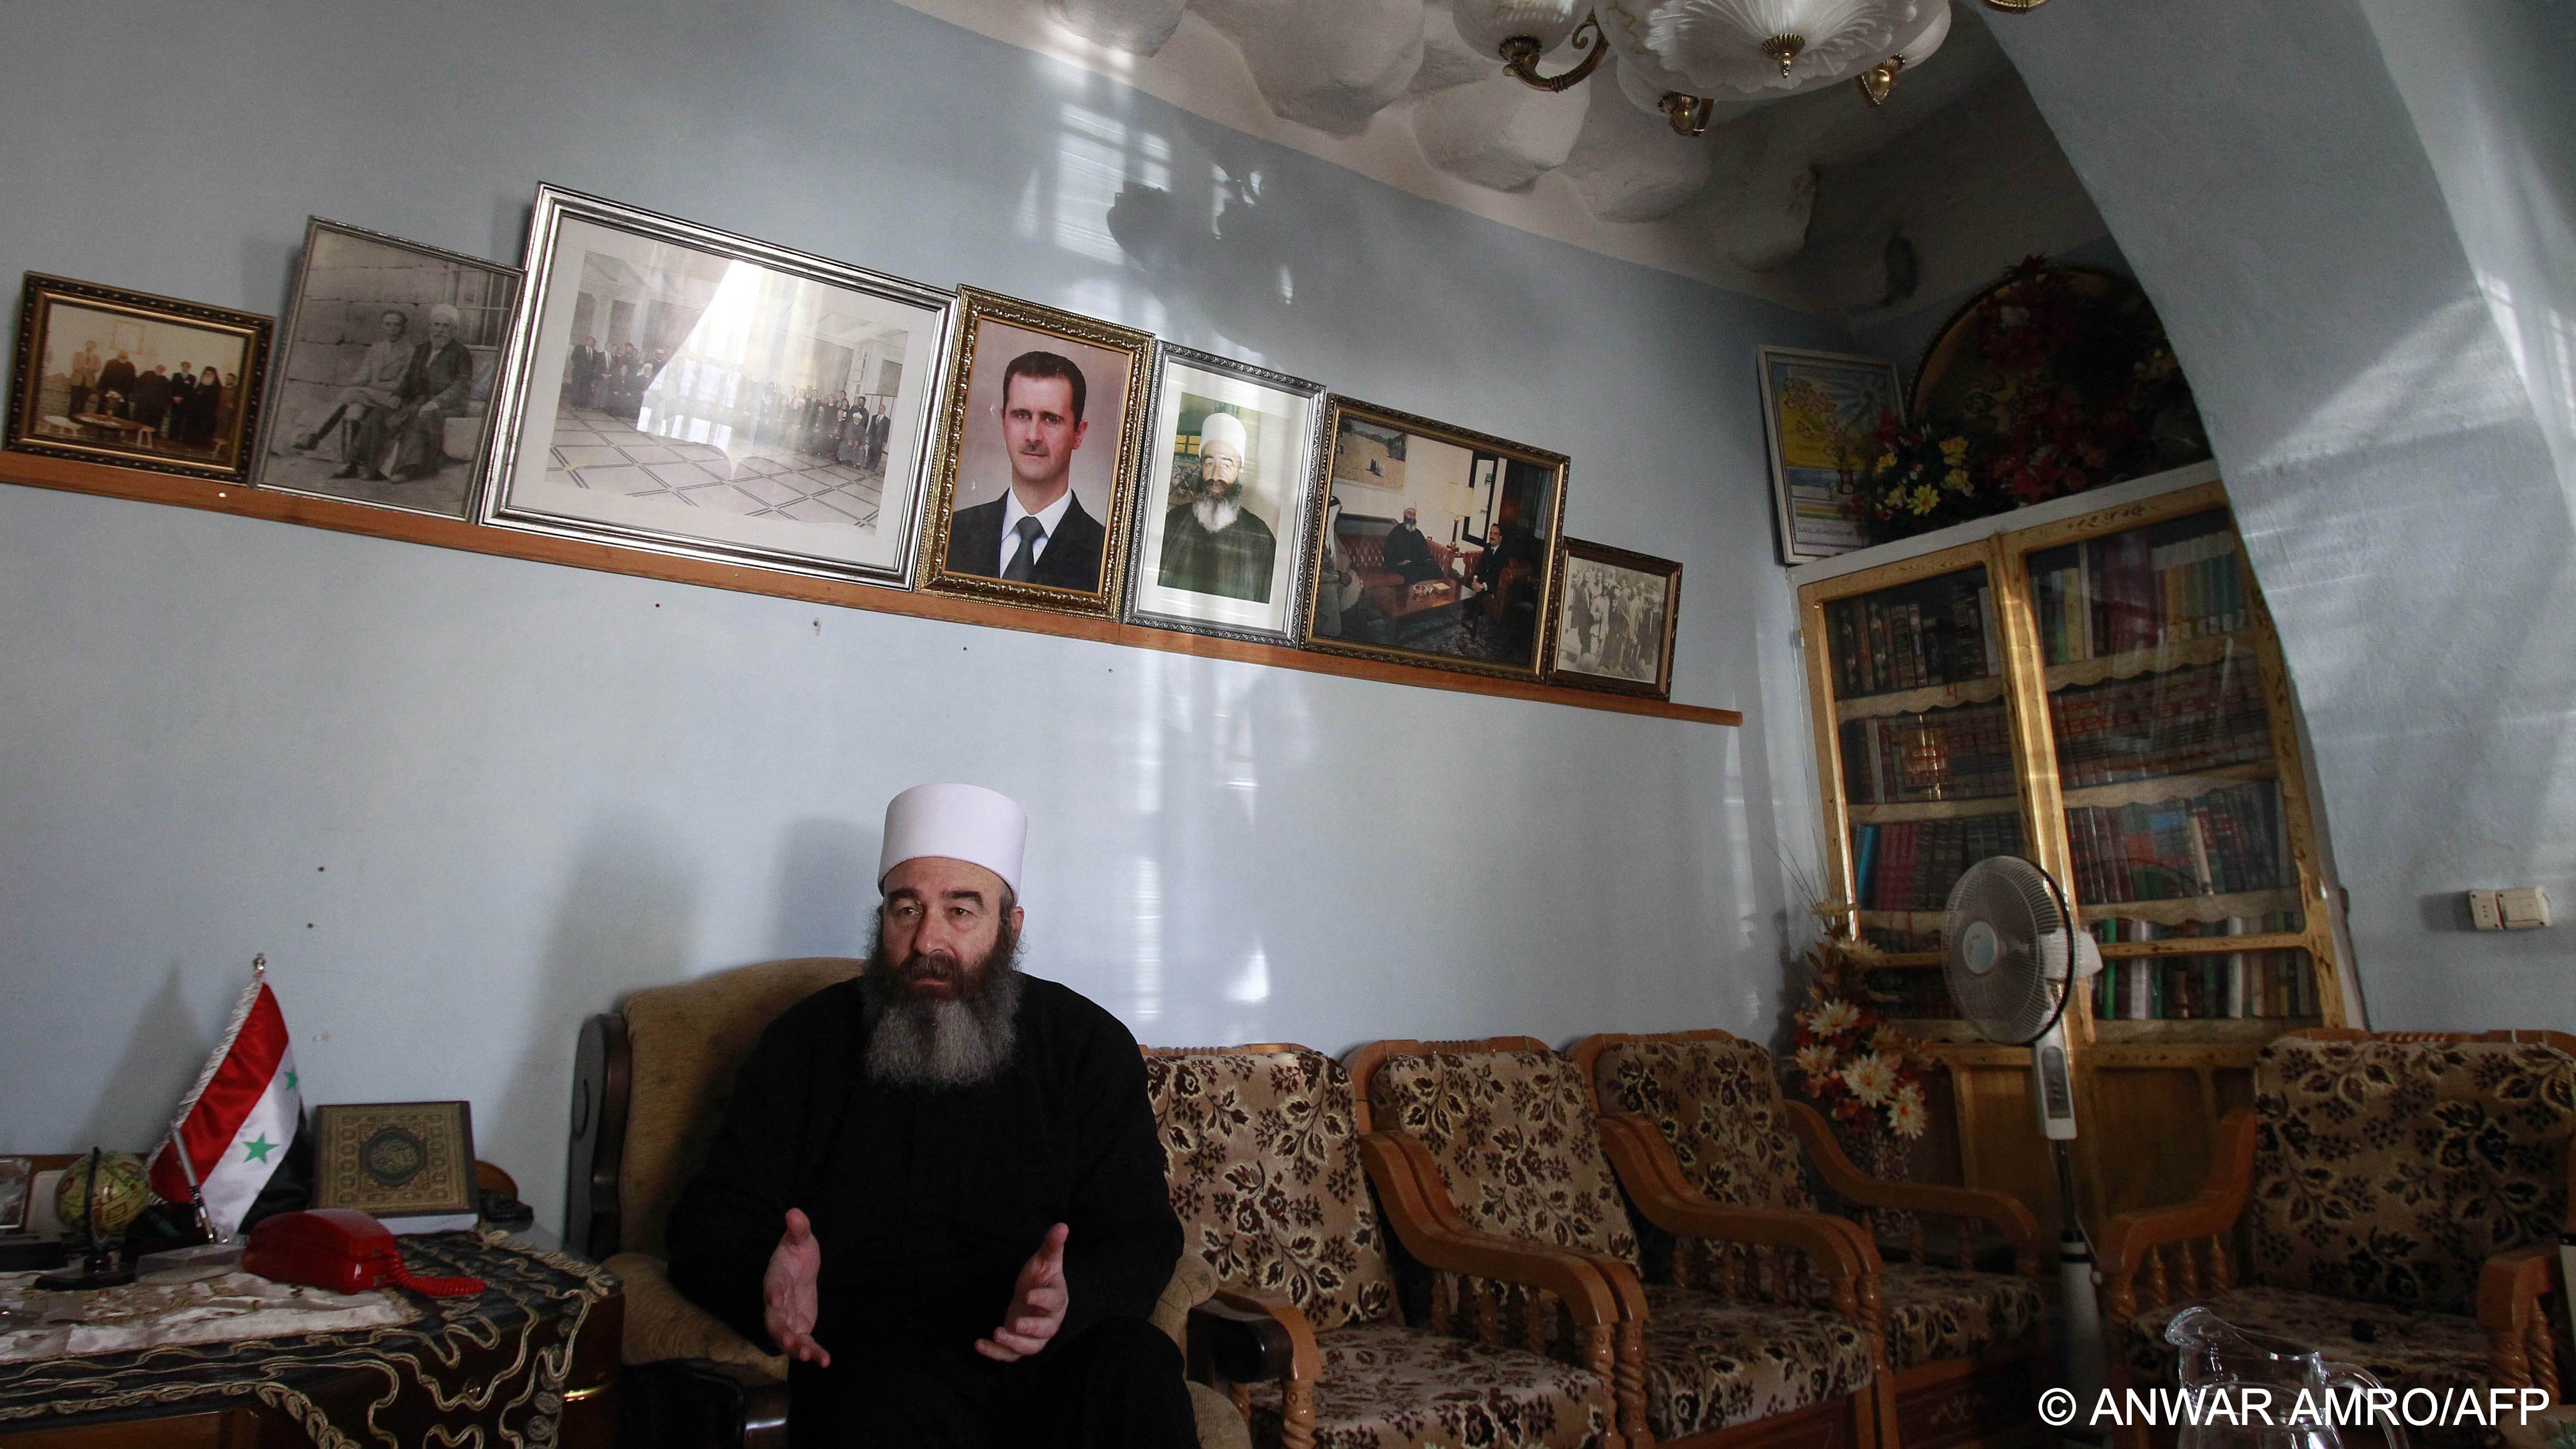 الشيخ حكمت الهجري، زعيم الرئاسة الروحية للمسلمين الموحدين الدروز. Druze spiritual leader Sheikh Hikmat al-Hajari (photo: Anwar Amro/AFP)